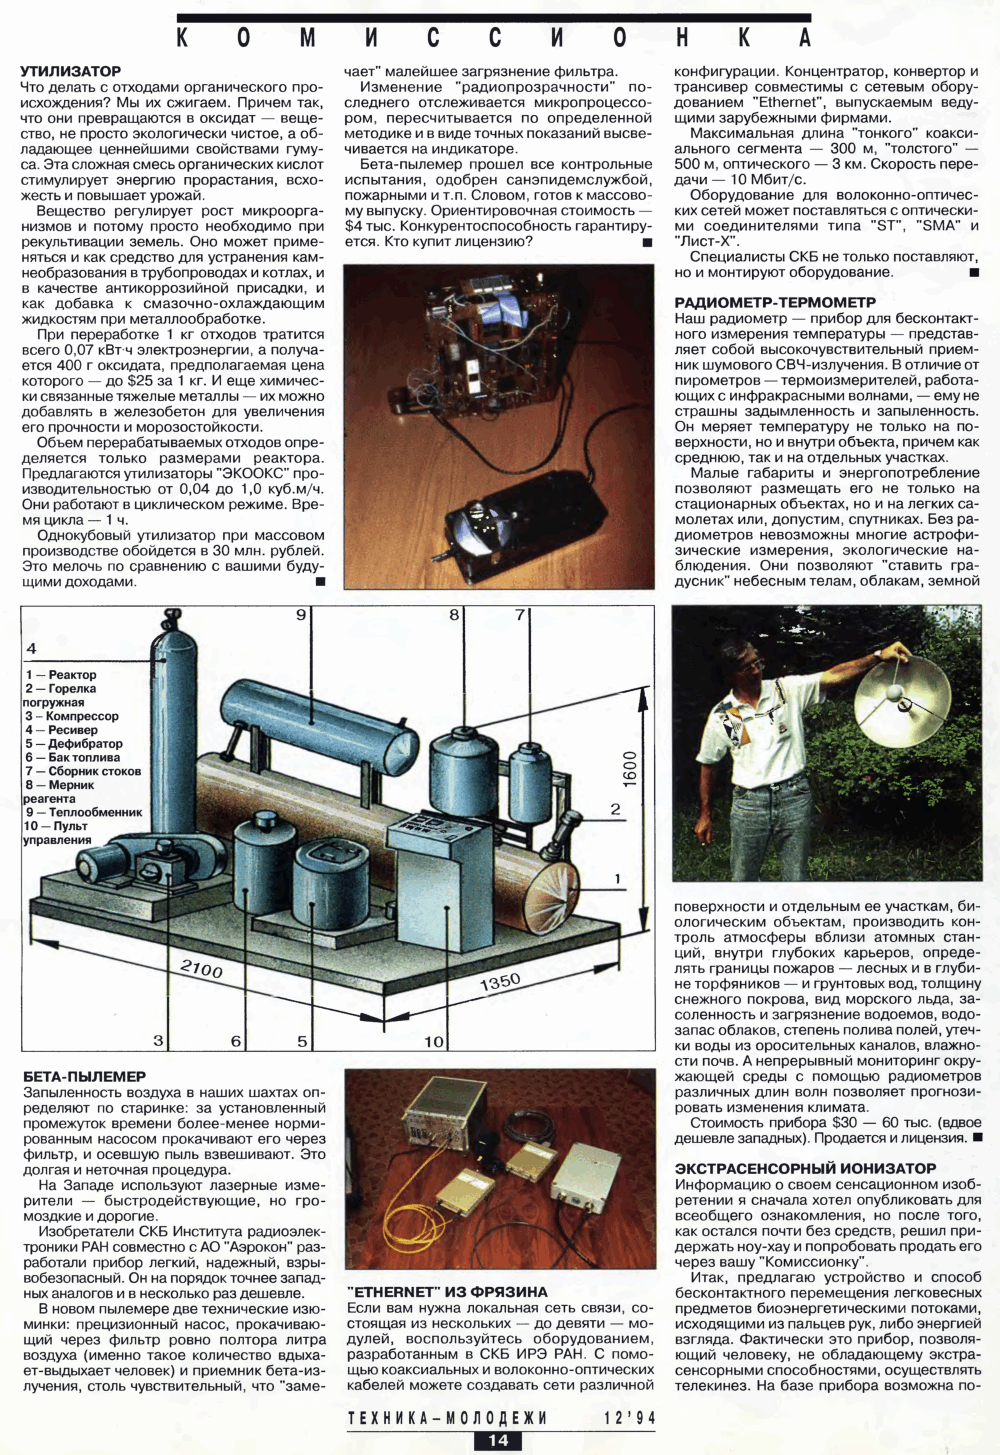 Экстрасенсорный ионизатор. Г. Рогов. Техника — Молодёжи, 1994, №12, с.14-15. Фотокопия №1